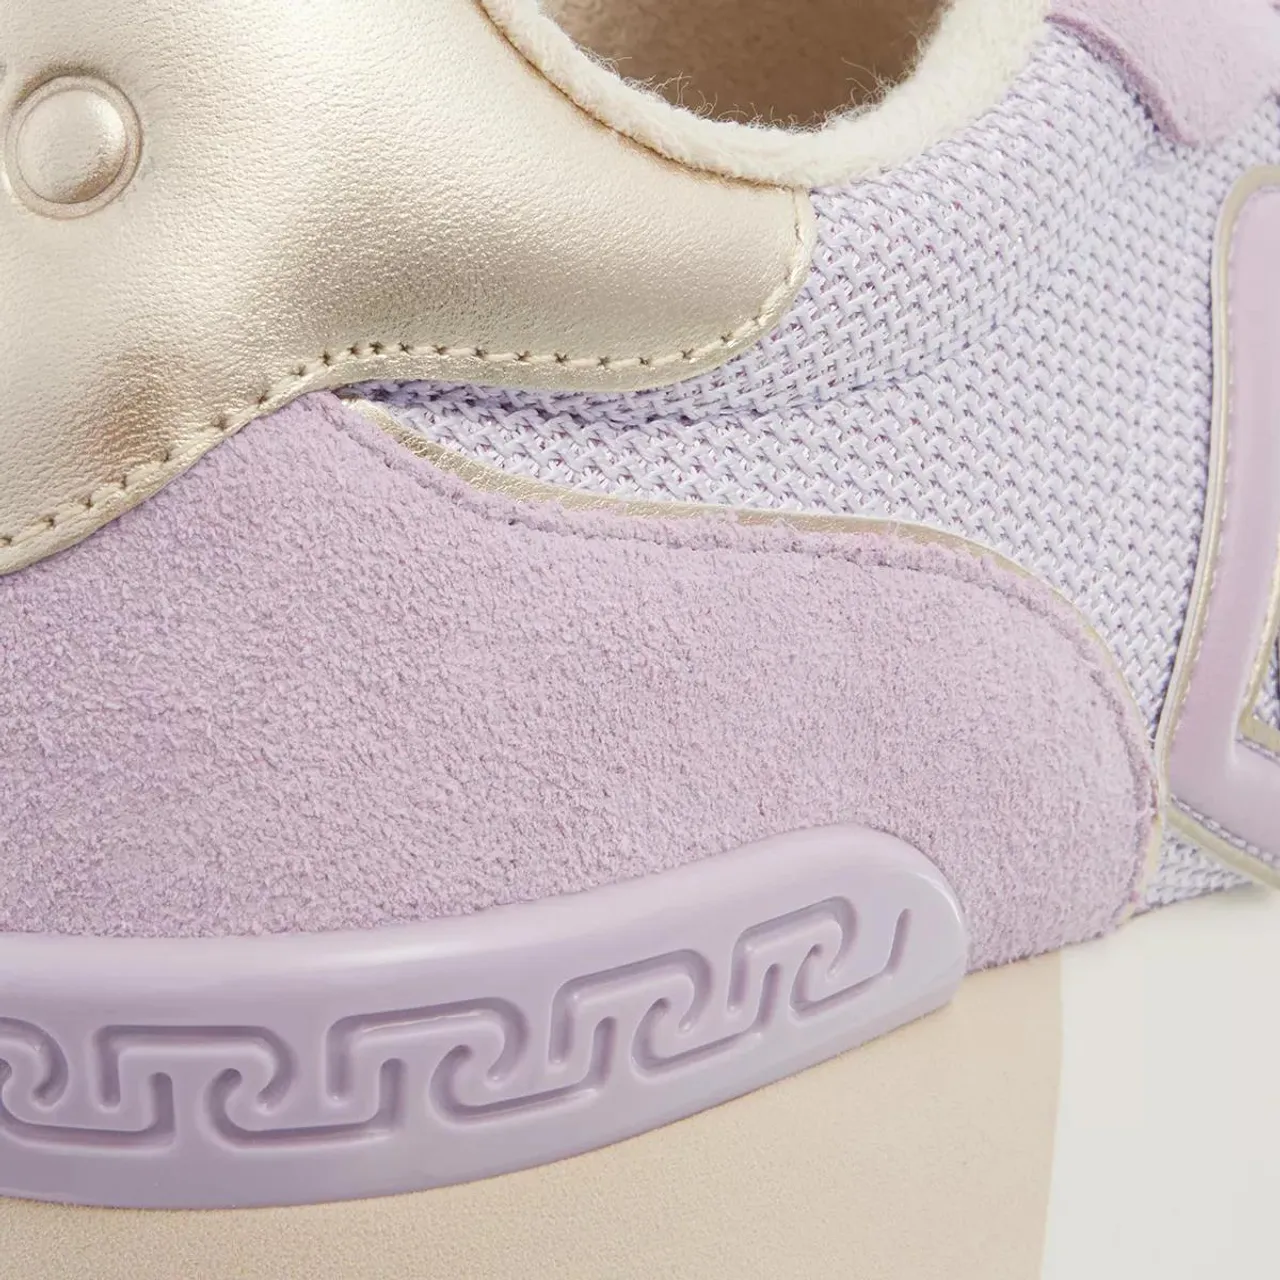 LIU JO Sneakers - Dreamy Sneakers - violet - Sneakers for ladies